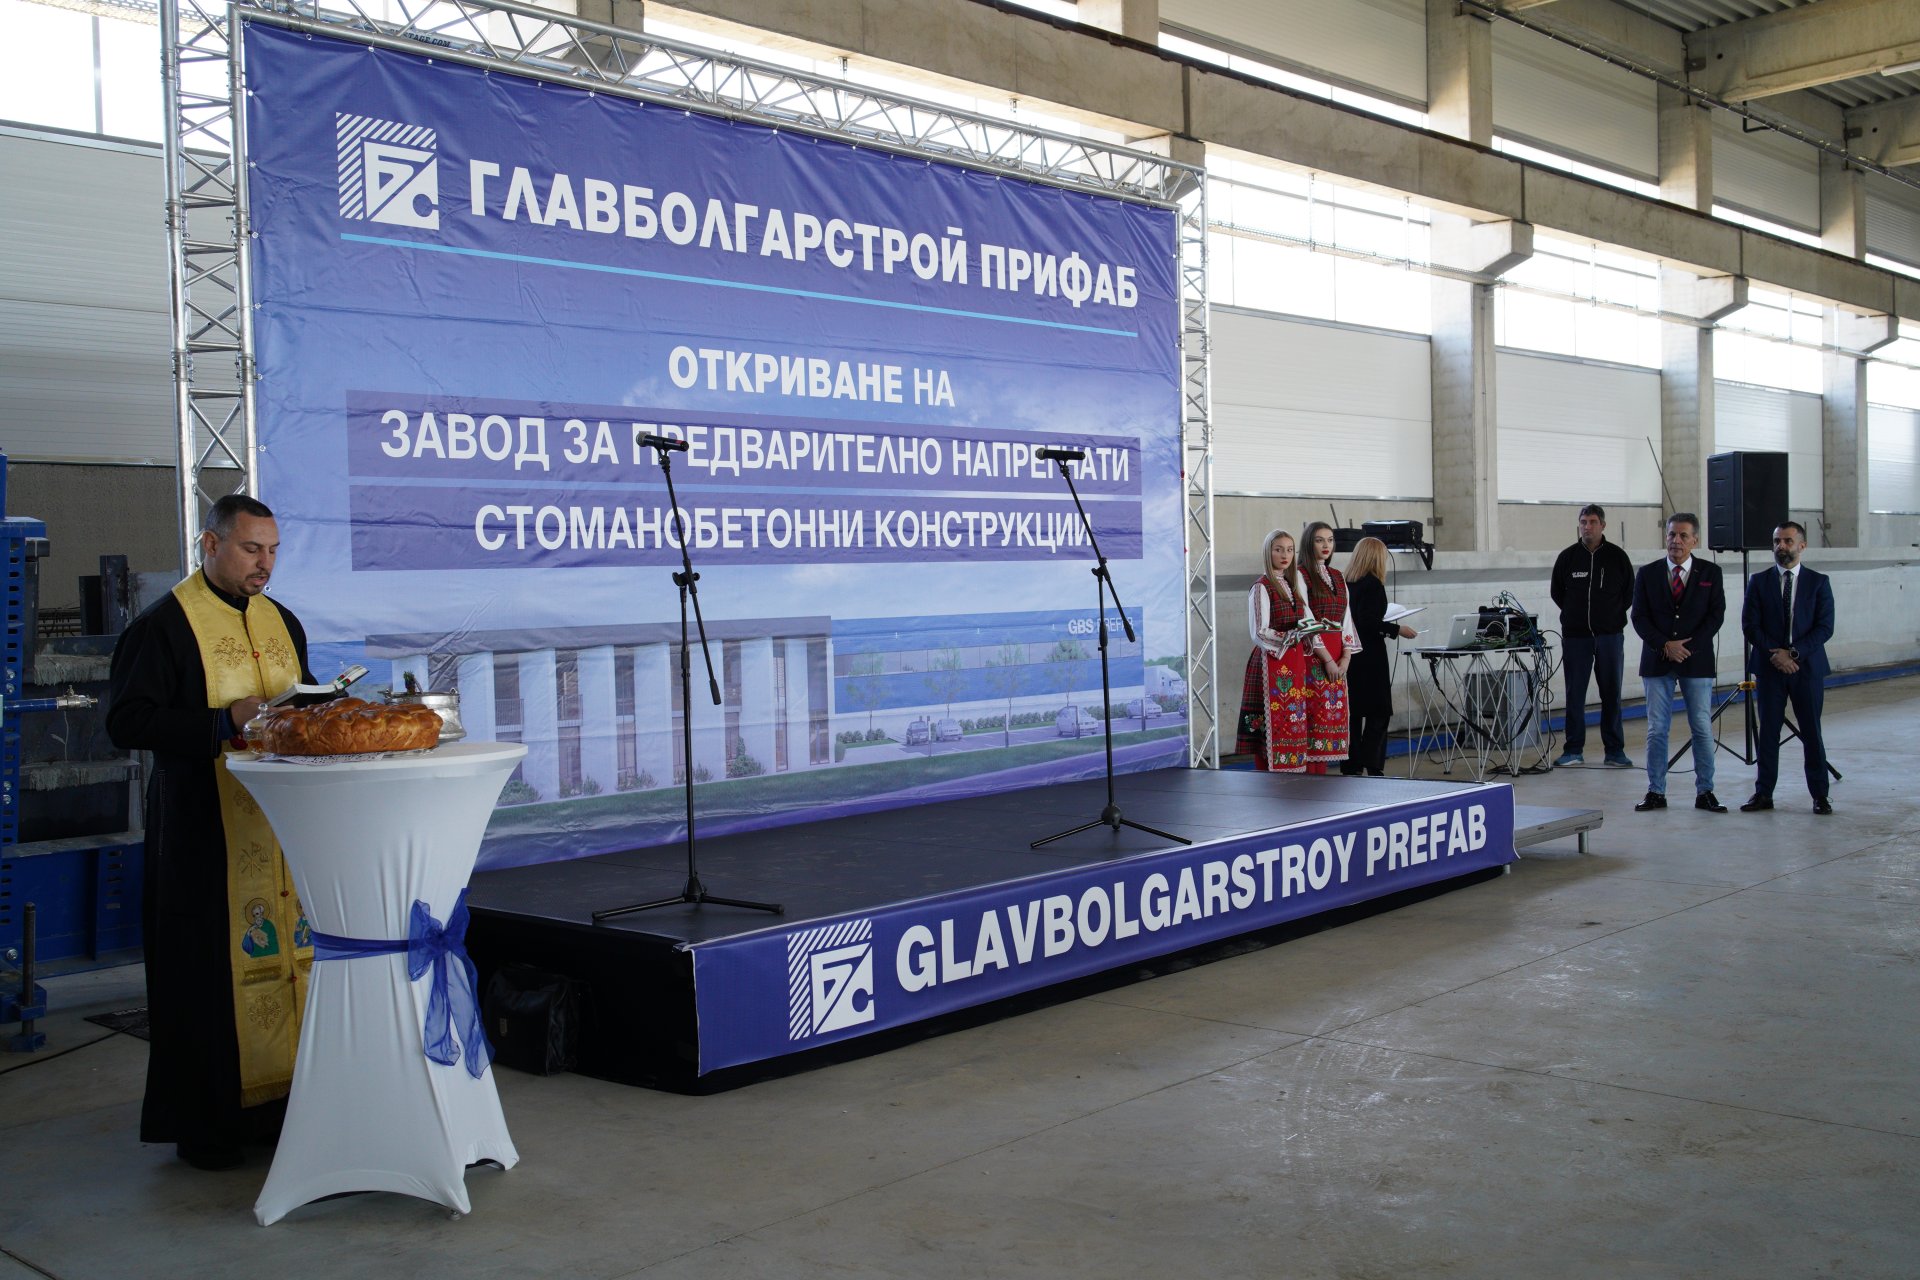 Официално откриване и освещаване на завода на "Главболгарстрой ПРИФАБ" ЕАД край Пазарджик